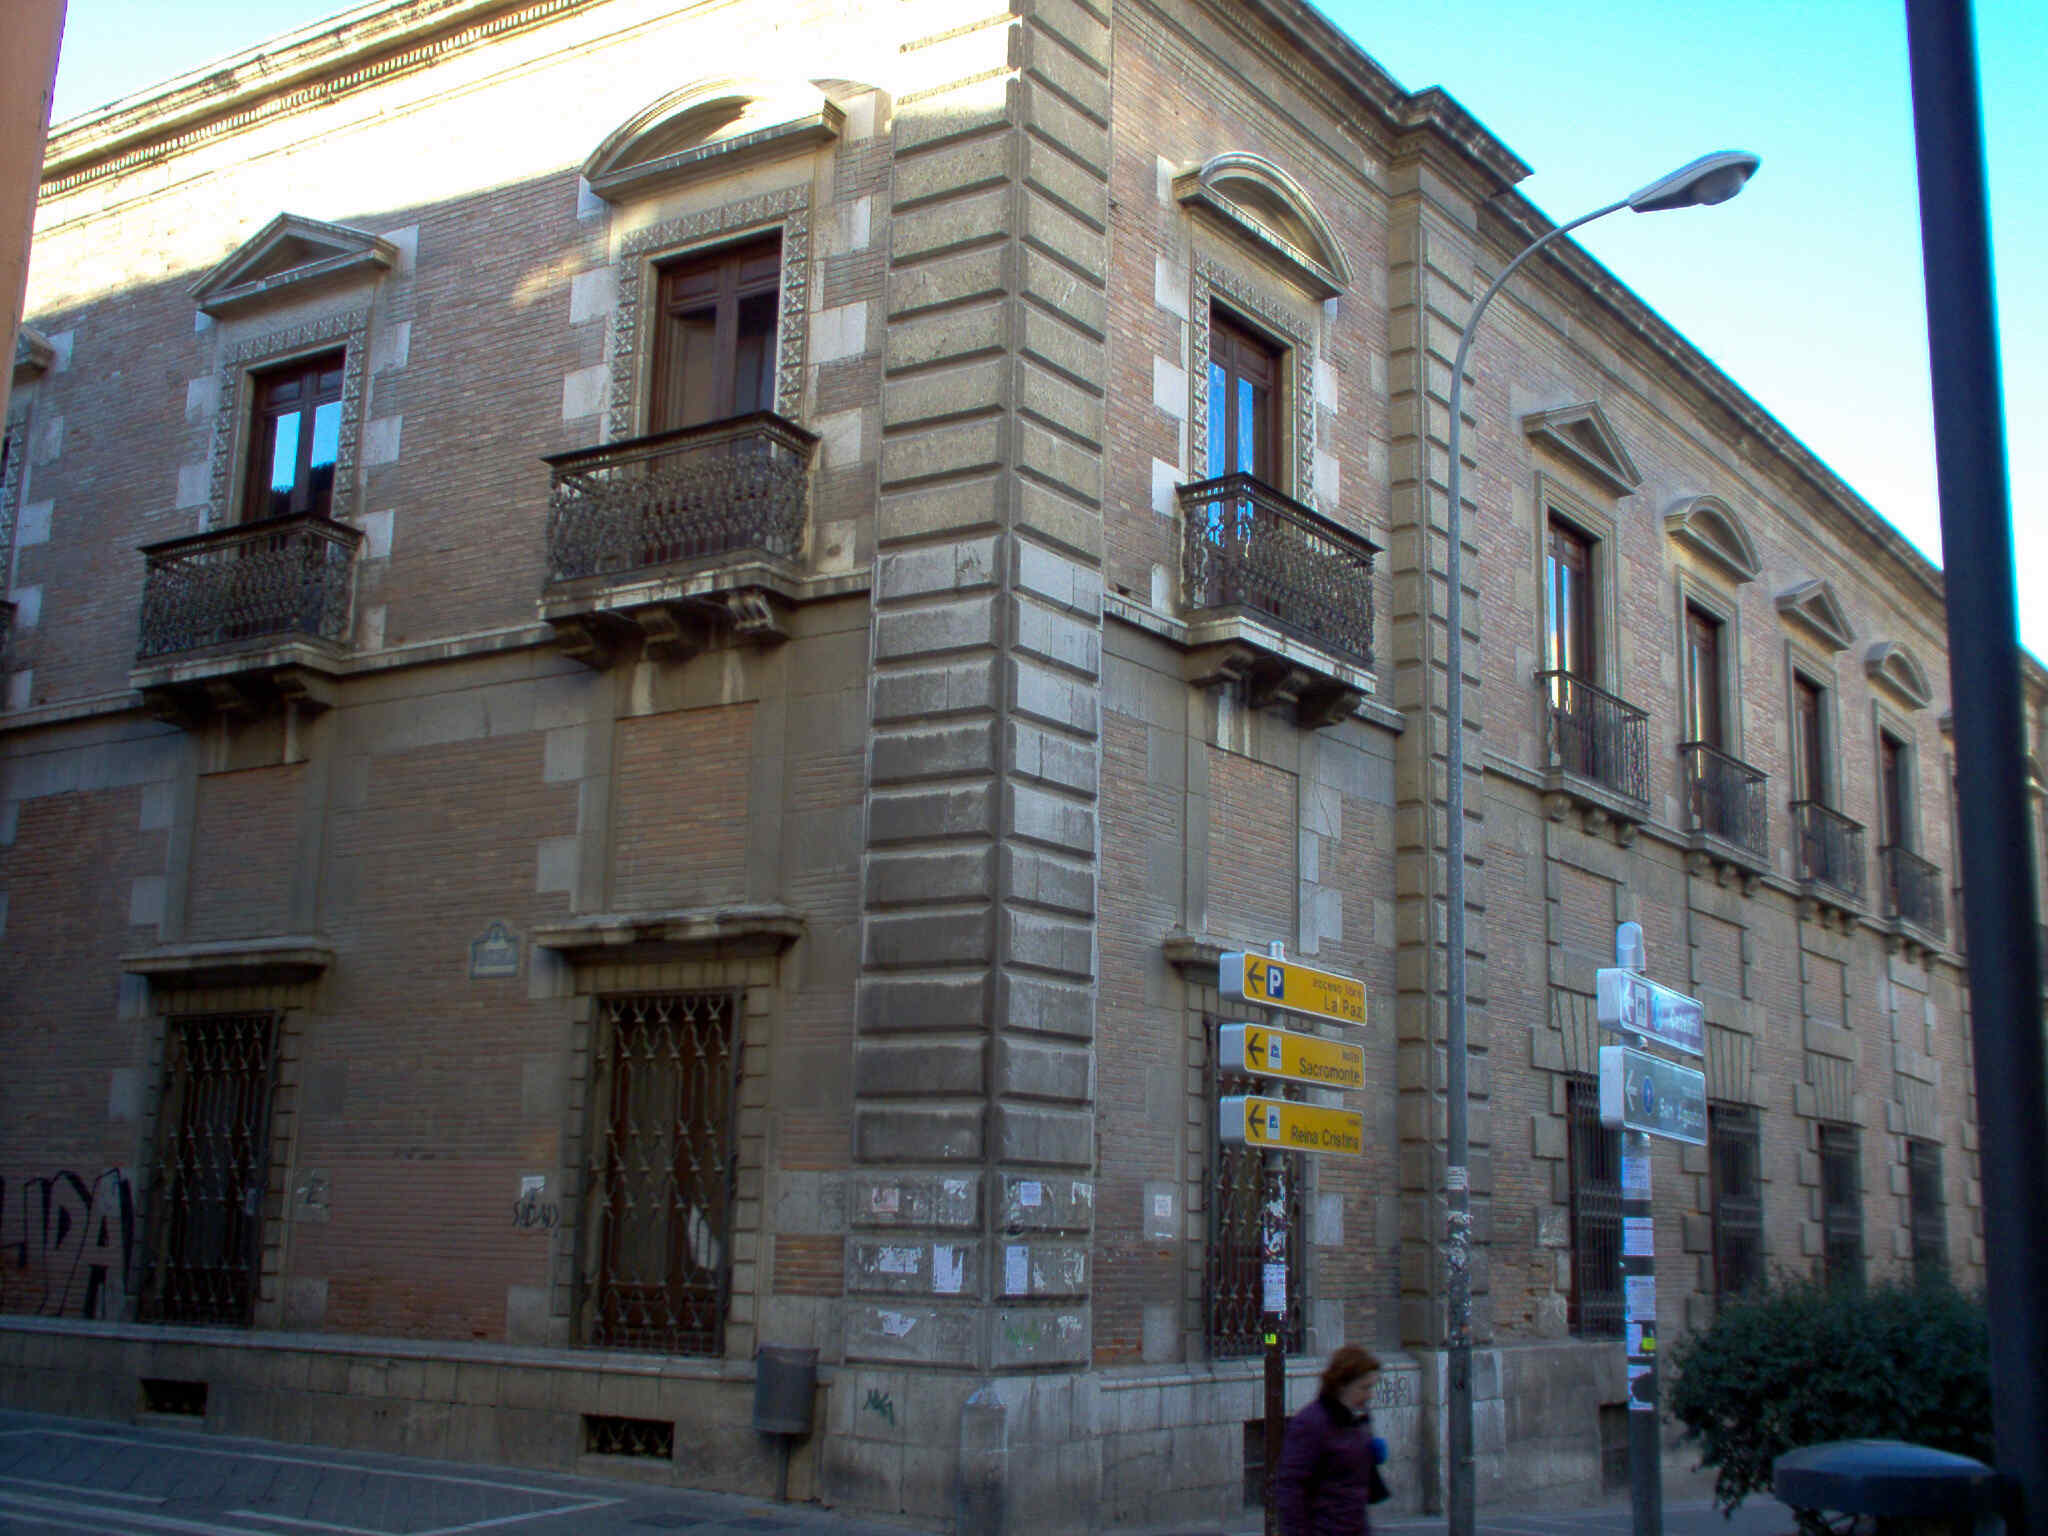 Palacio de las Columnas - Esquina calle Puentezuelas